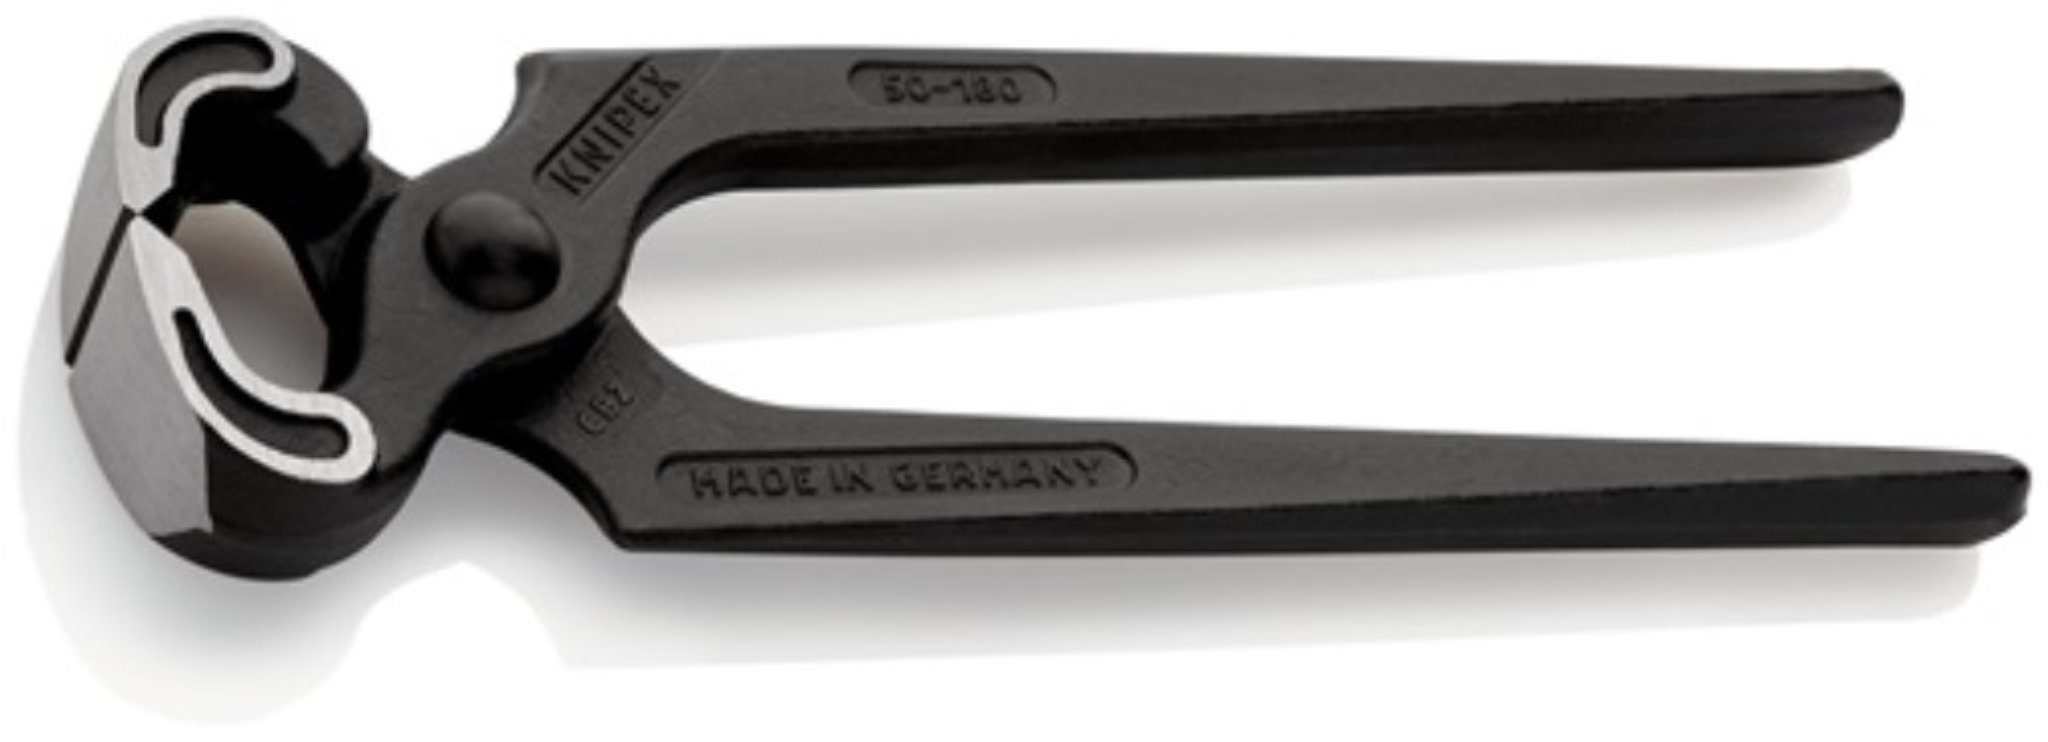 Knipex Kneifzange Kneifzange Gesamt-L.180mm Zange schwarz atram.KNIPEX deutsche Form ·